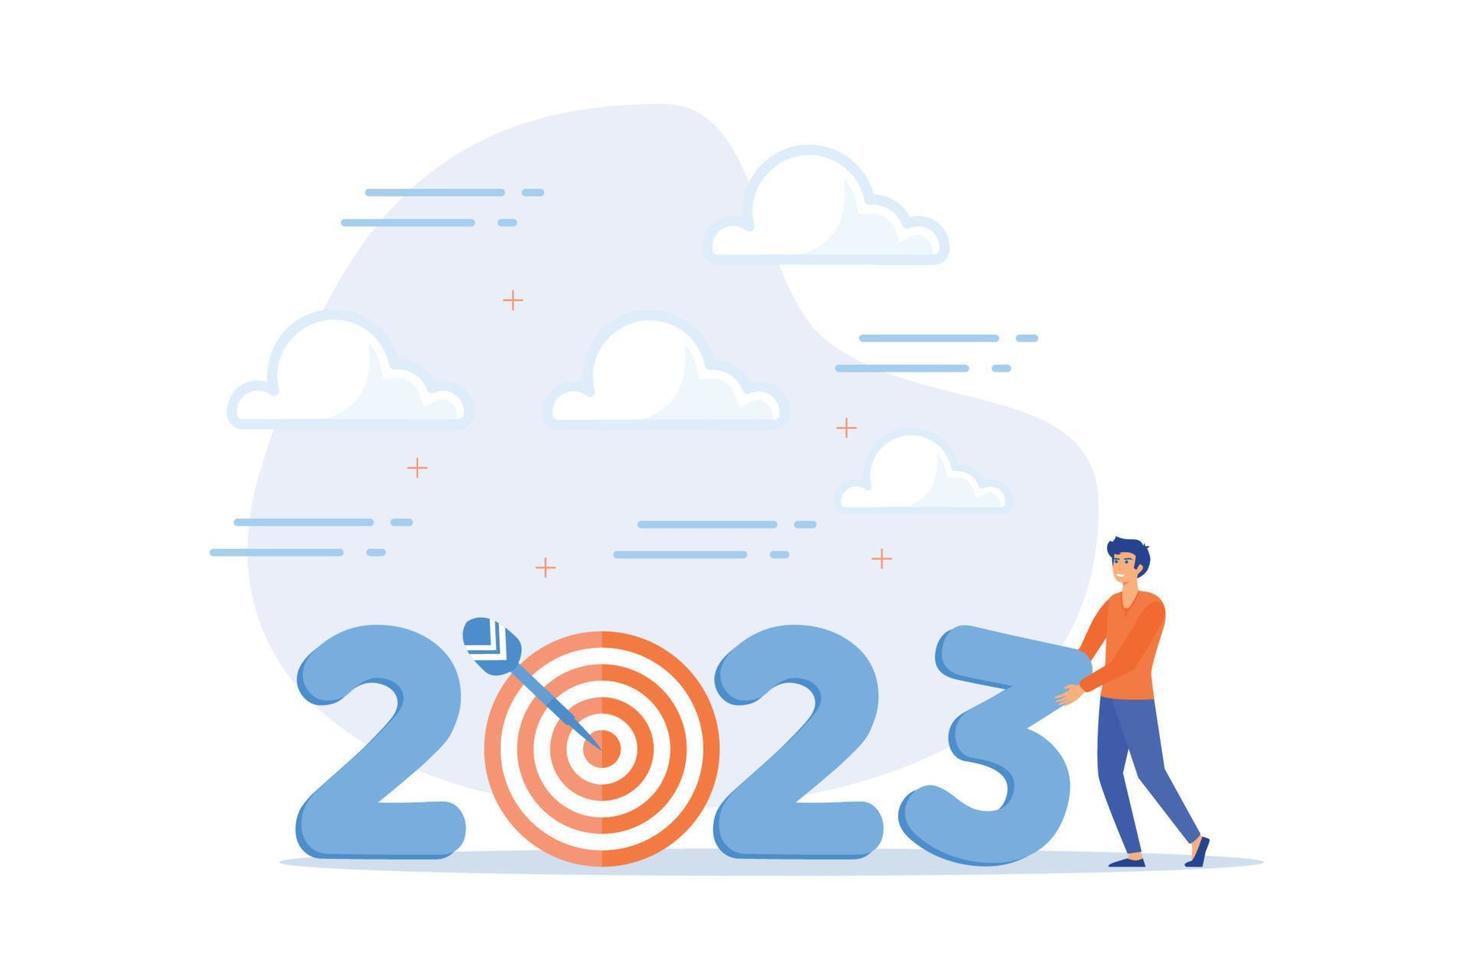 objectif commercial de l'année 2023, résolution du nouvel an ou défi pour atteindre l'objectif, viser le succès de l'entreprise, la croissance ou la motivation pour réussir le concept, illustration moderne à vecteur plat